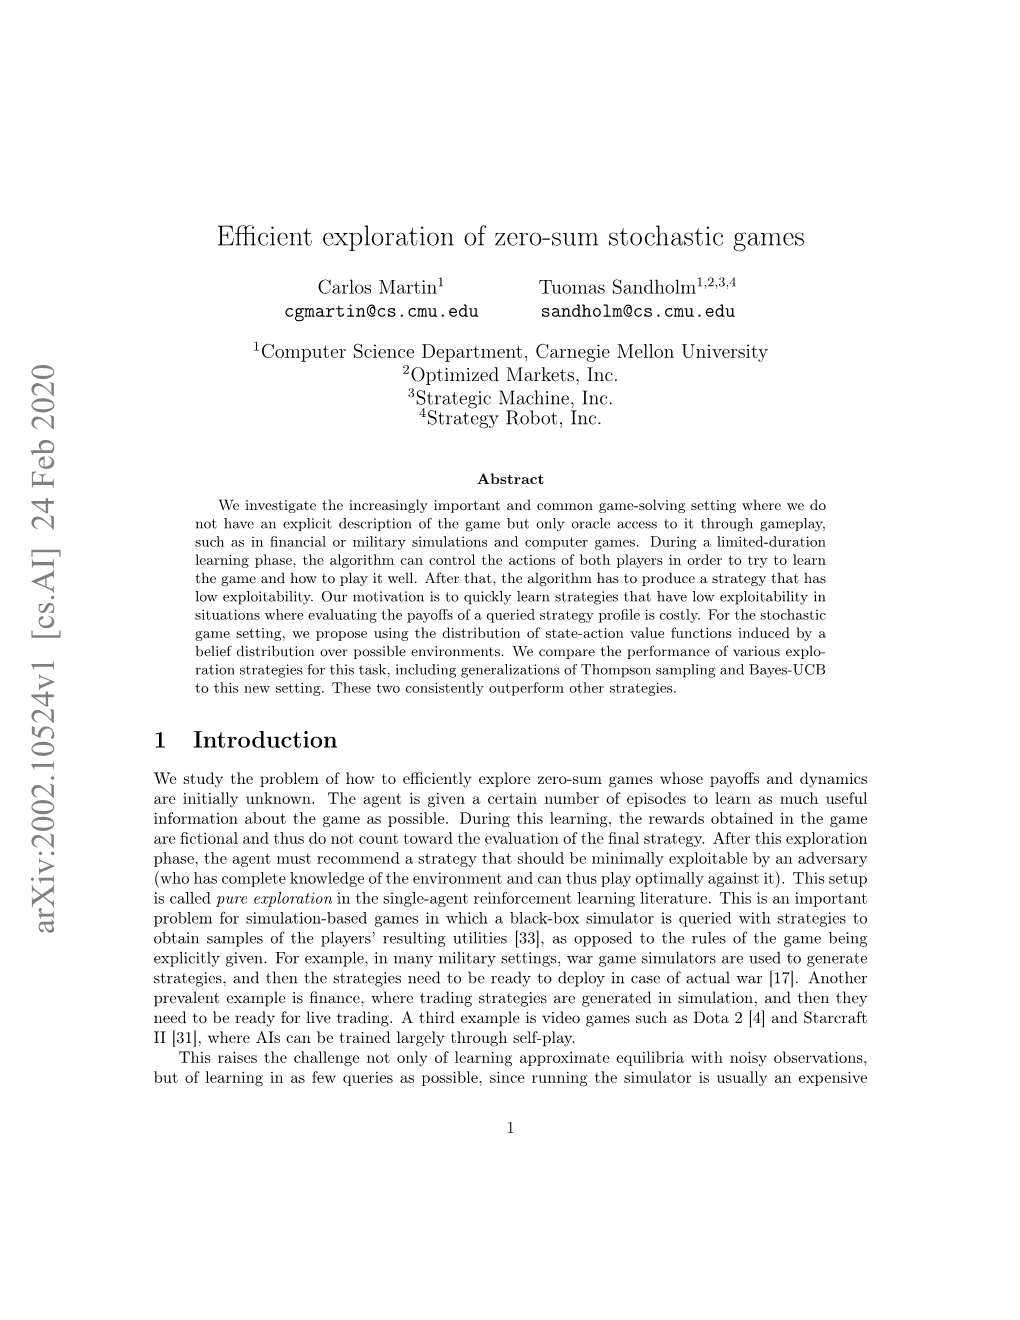 Efficient Exploration of Zero-Sum Stochastic Games